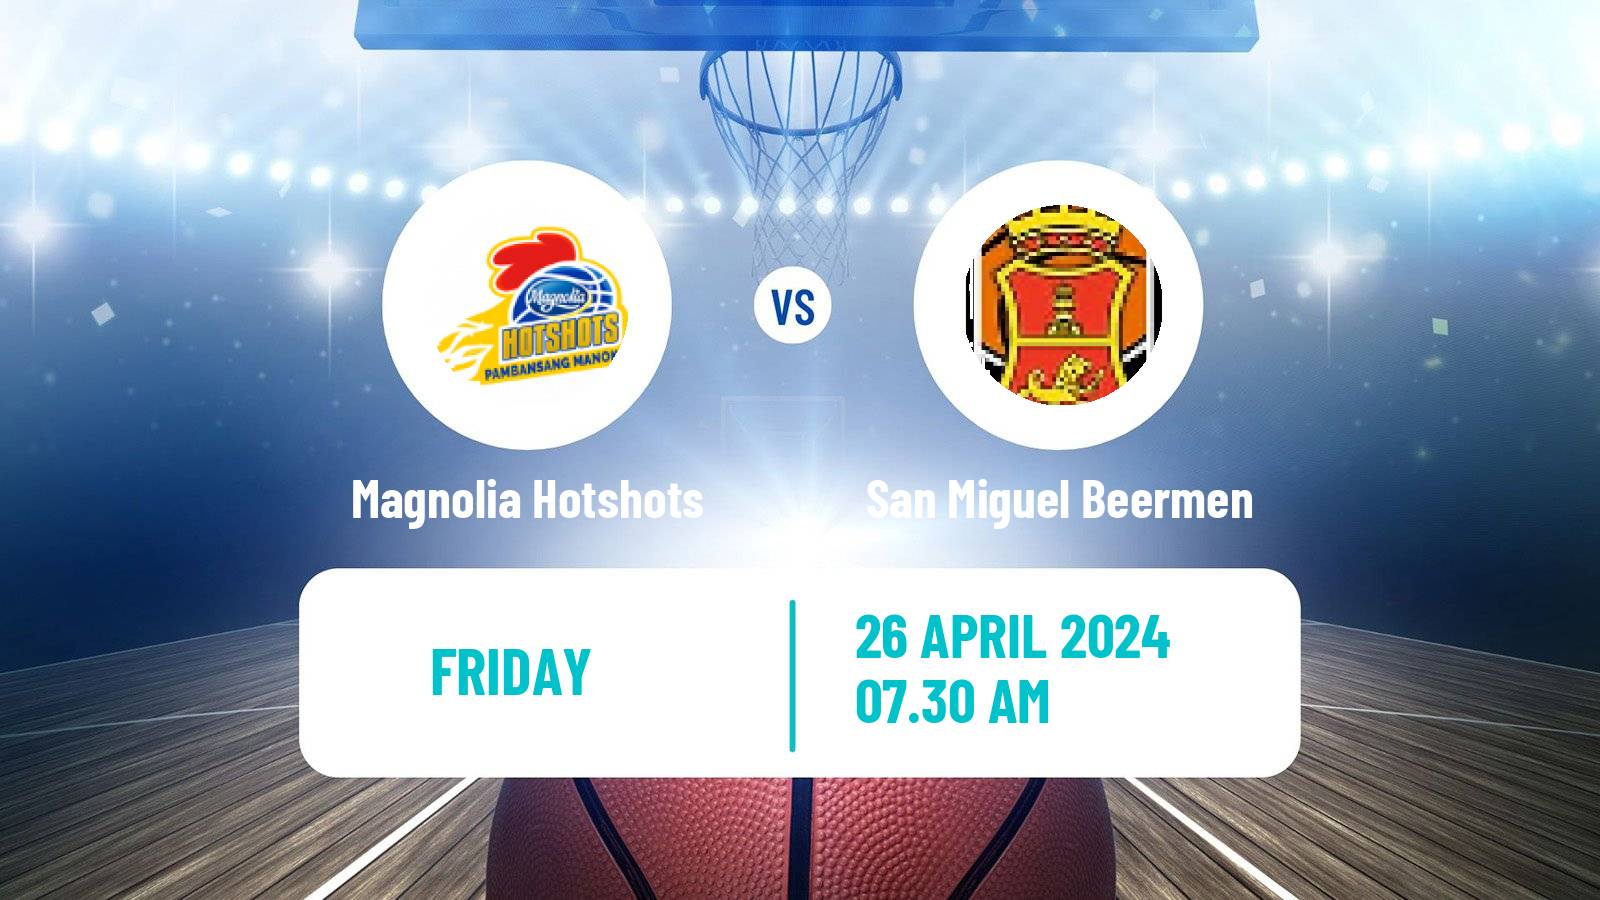 Basketball Philippines Cup Magnolia Hotshots - San Miguel Beermen